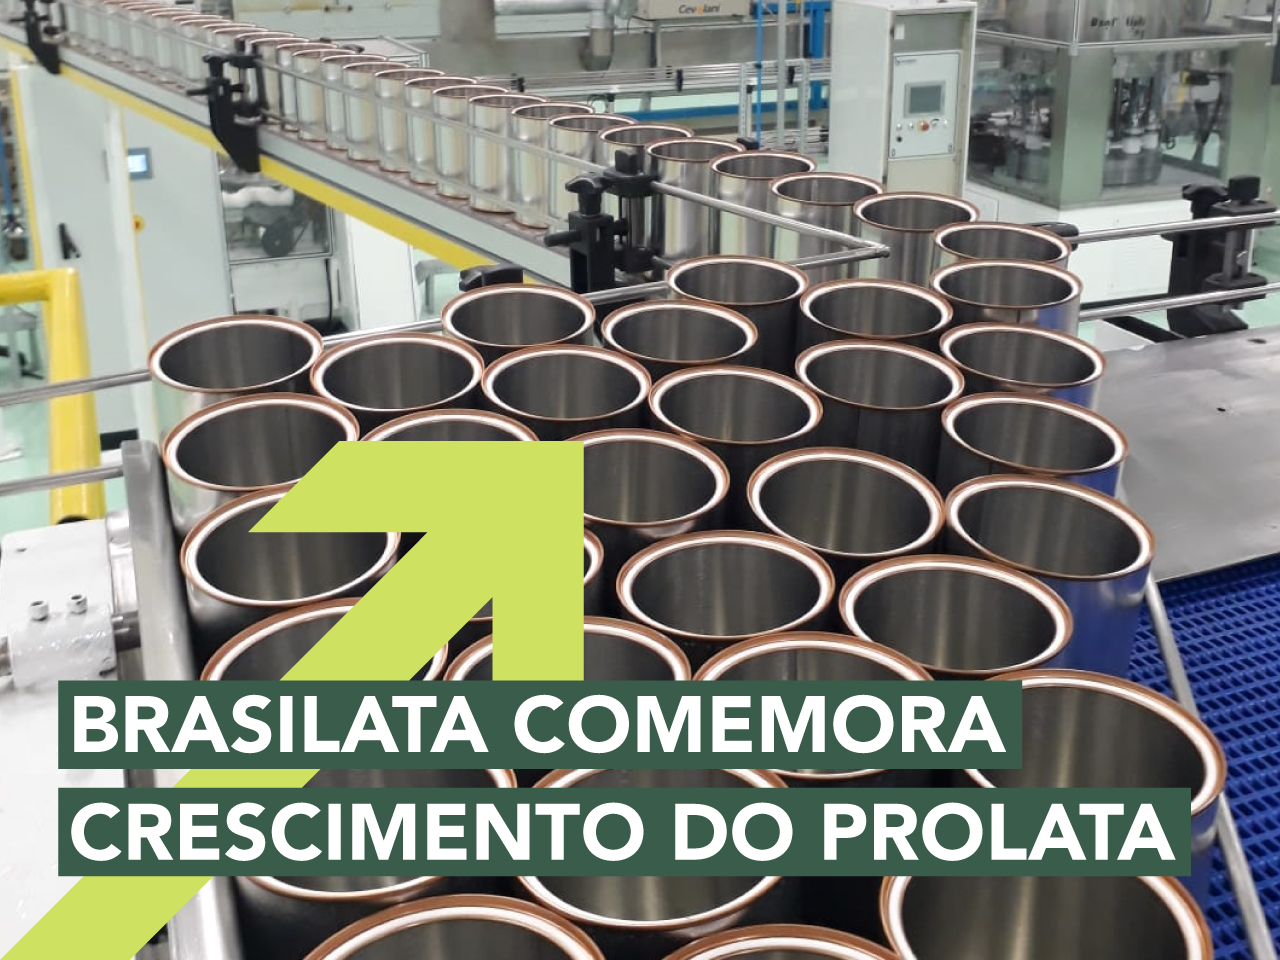 Brasilata comemora crescimento da Prolata